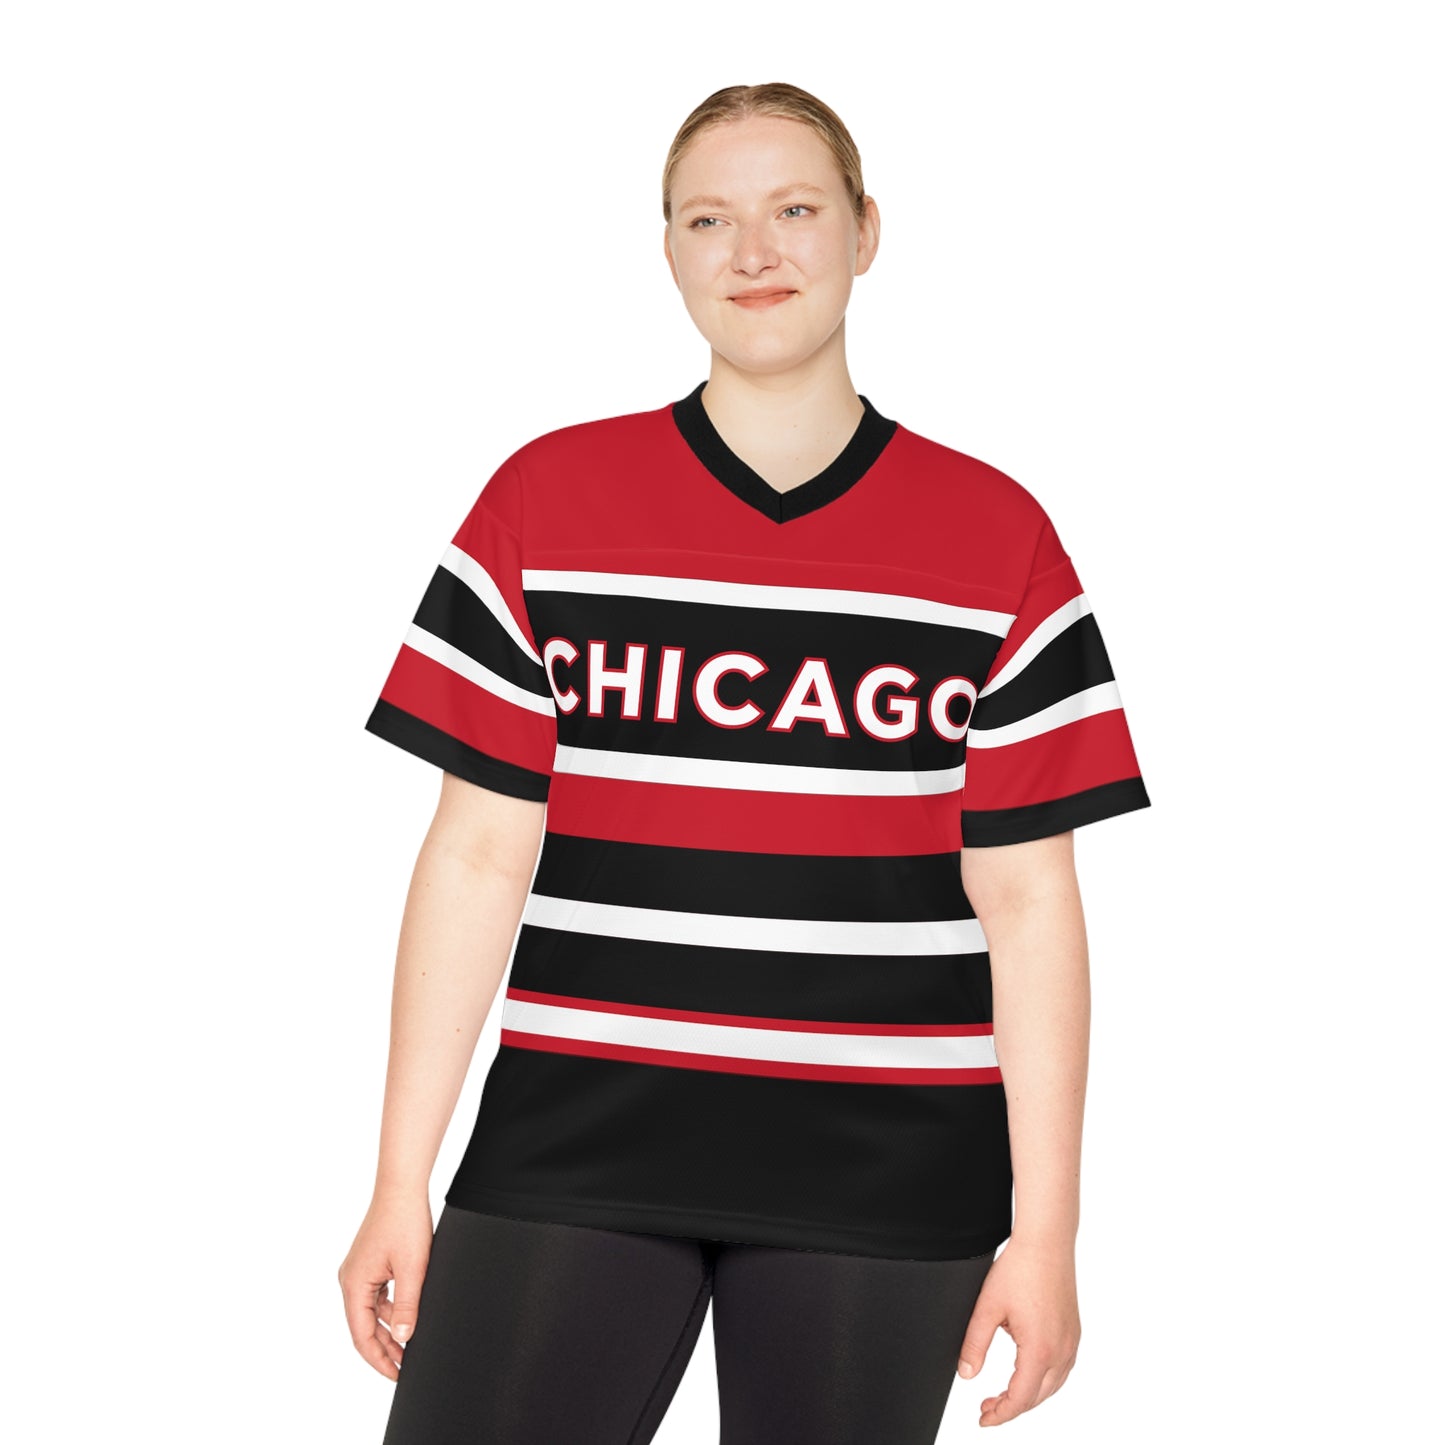 Oversized Chicago Jersey | Chicago Jersey | Chicago Shirt | Chicago Football Jersey